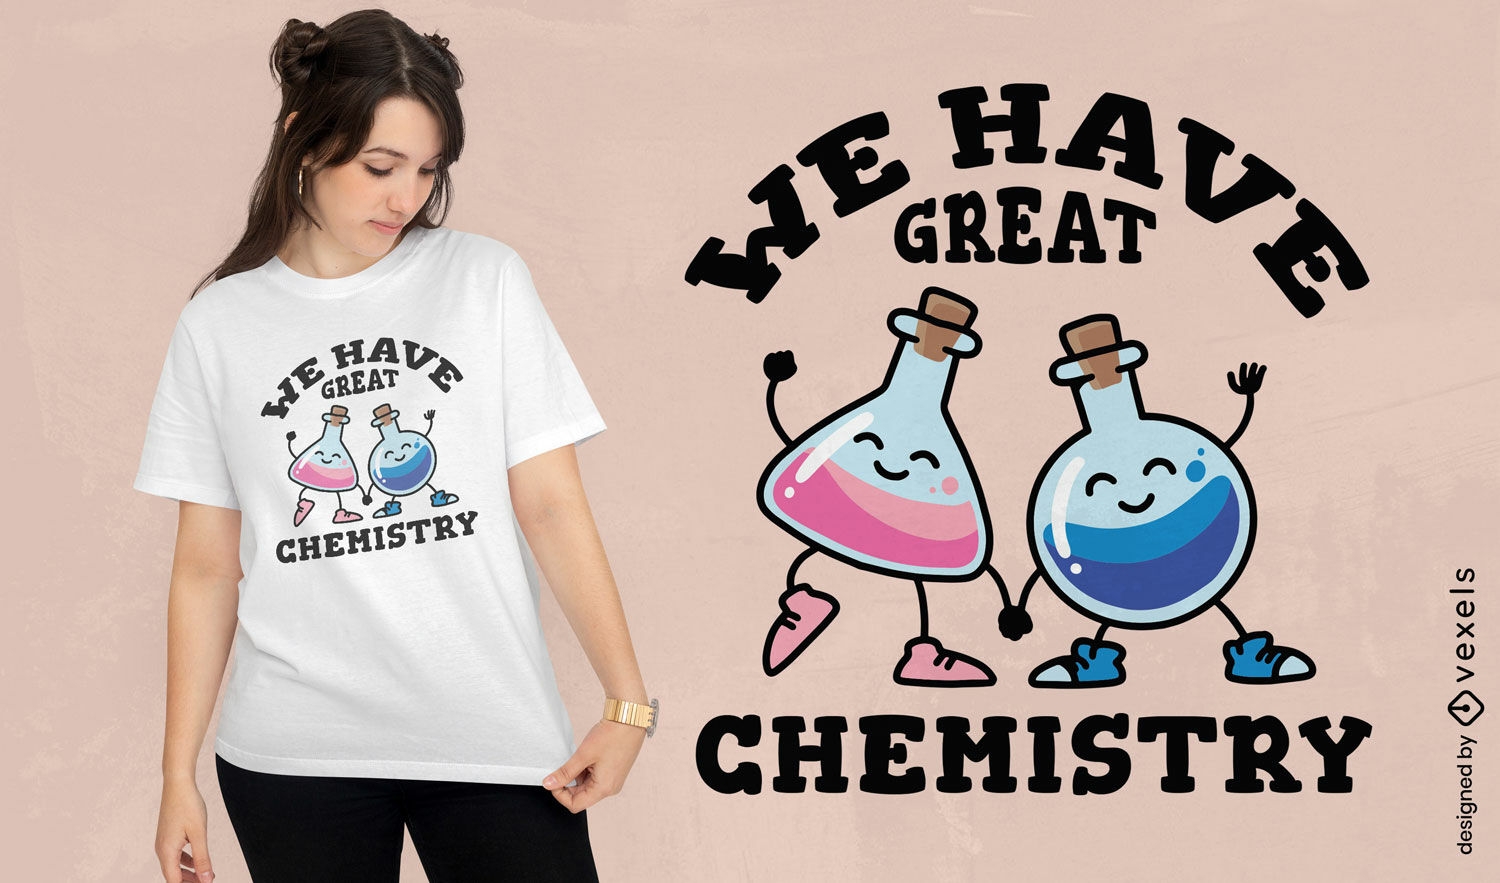 Wir haben ein tolles Chemie-T-Shirt-Design